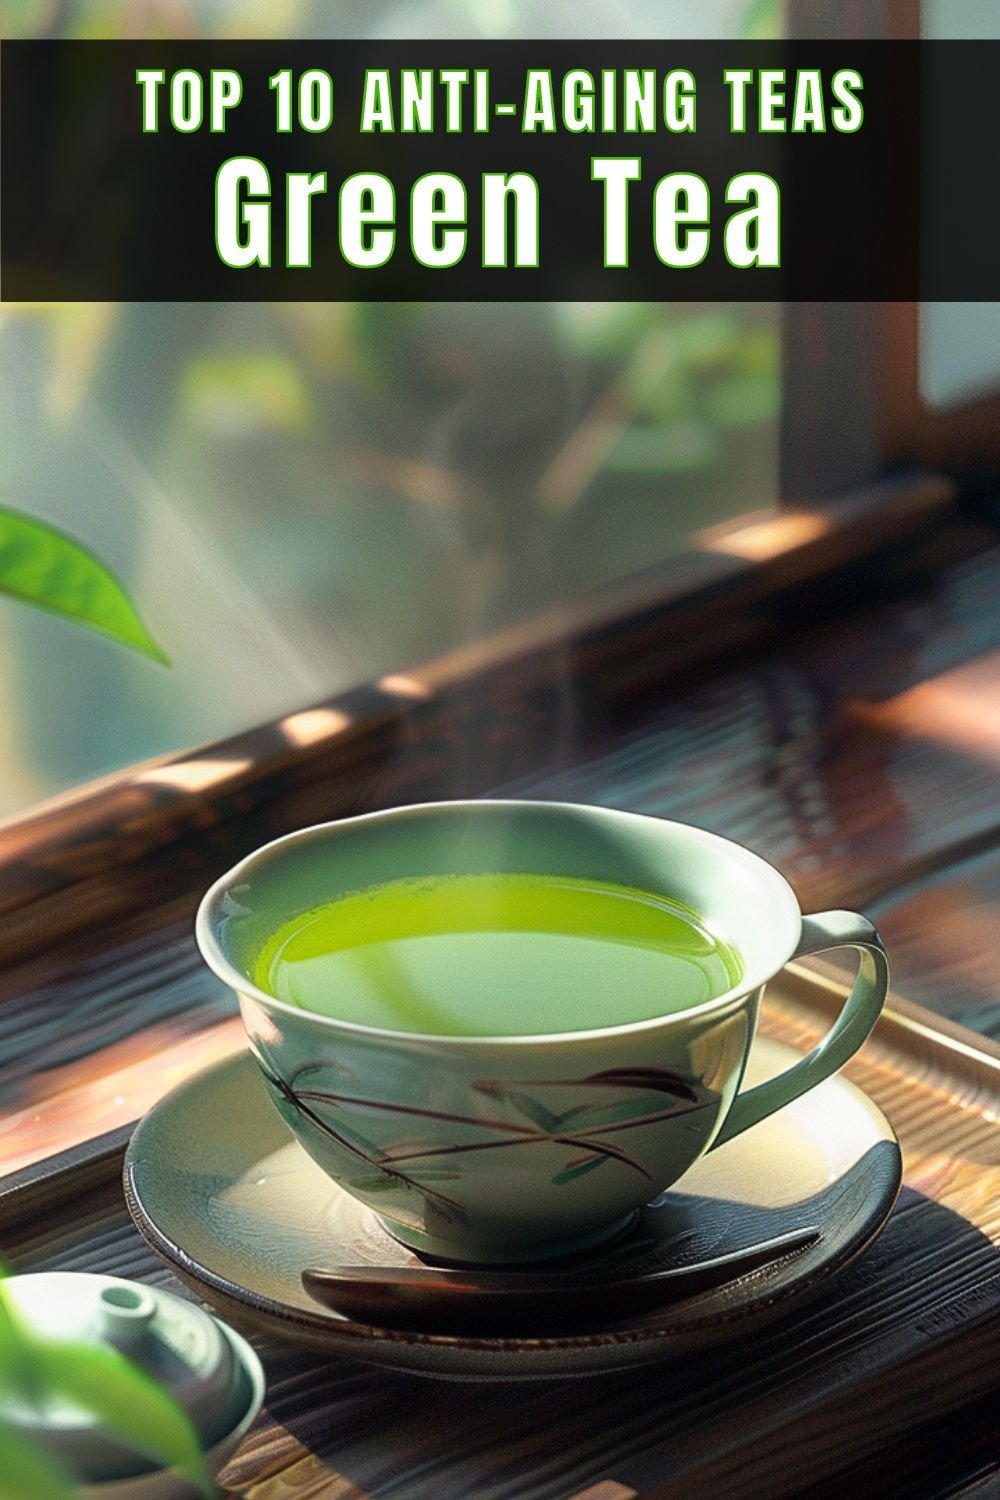 Top 10 Anti-Aging Teas Green Tea